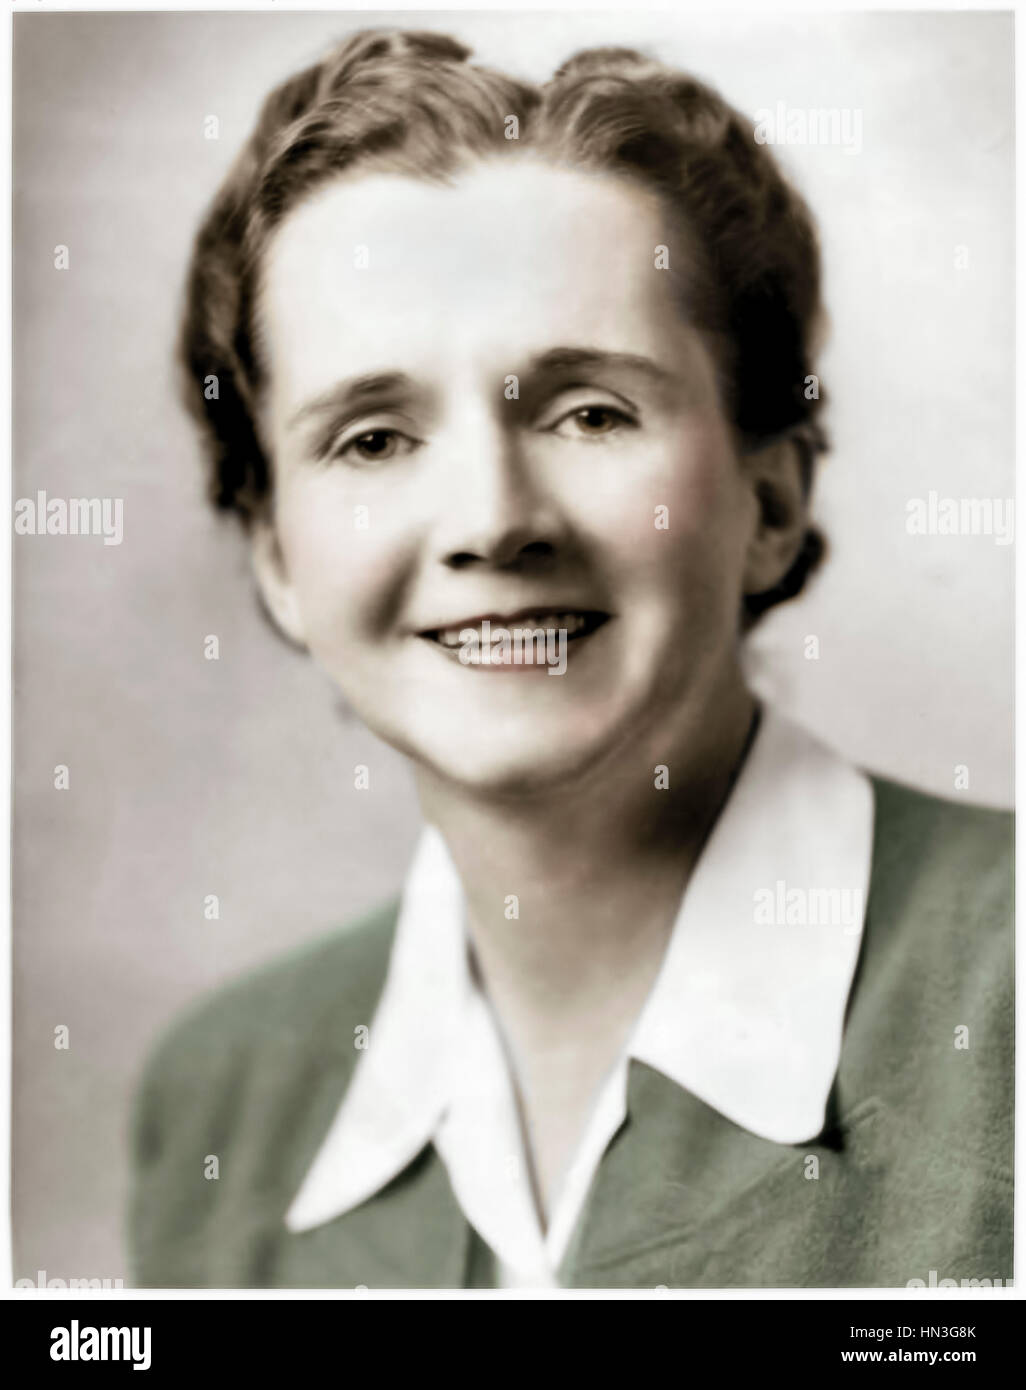 Rachel Carson (1907-1964) US-amerikanischer Meeresbiologe und Autor von "Silent Spring" (1962) über die durch Pestizide verursachten Umweltschäden. Stockfoto